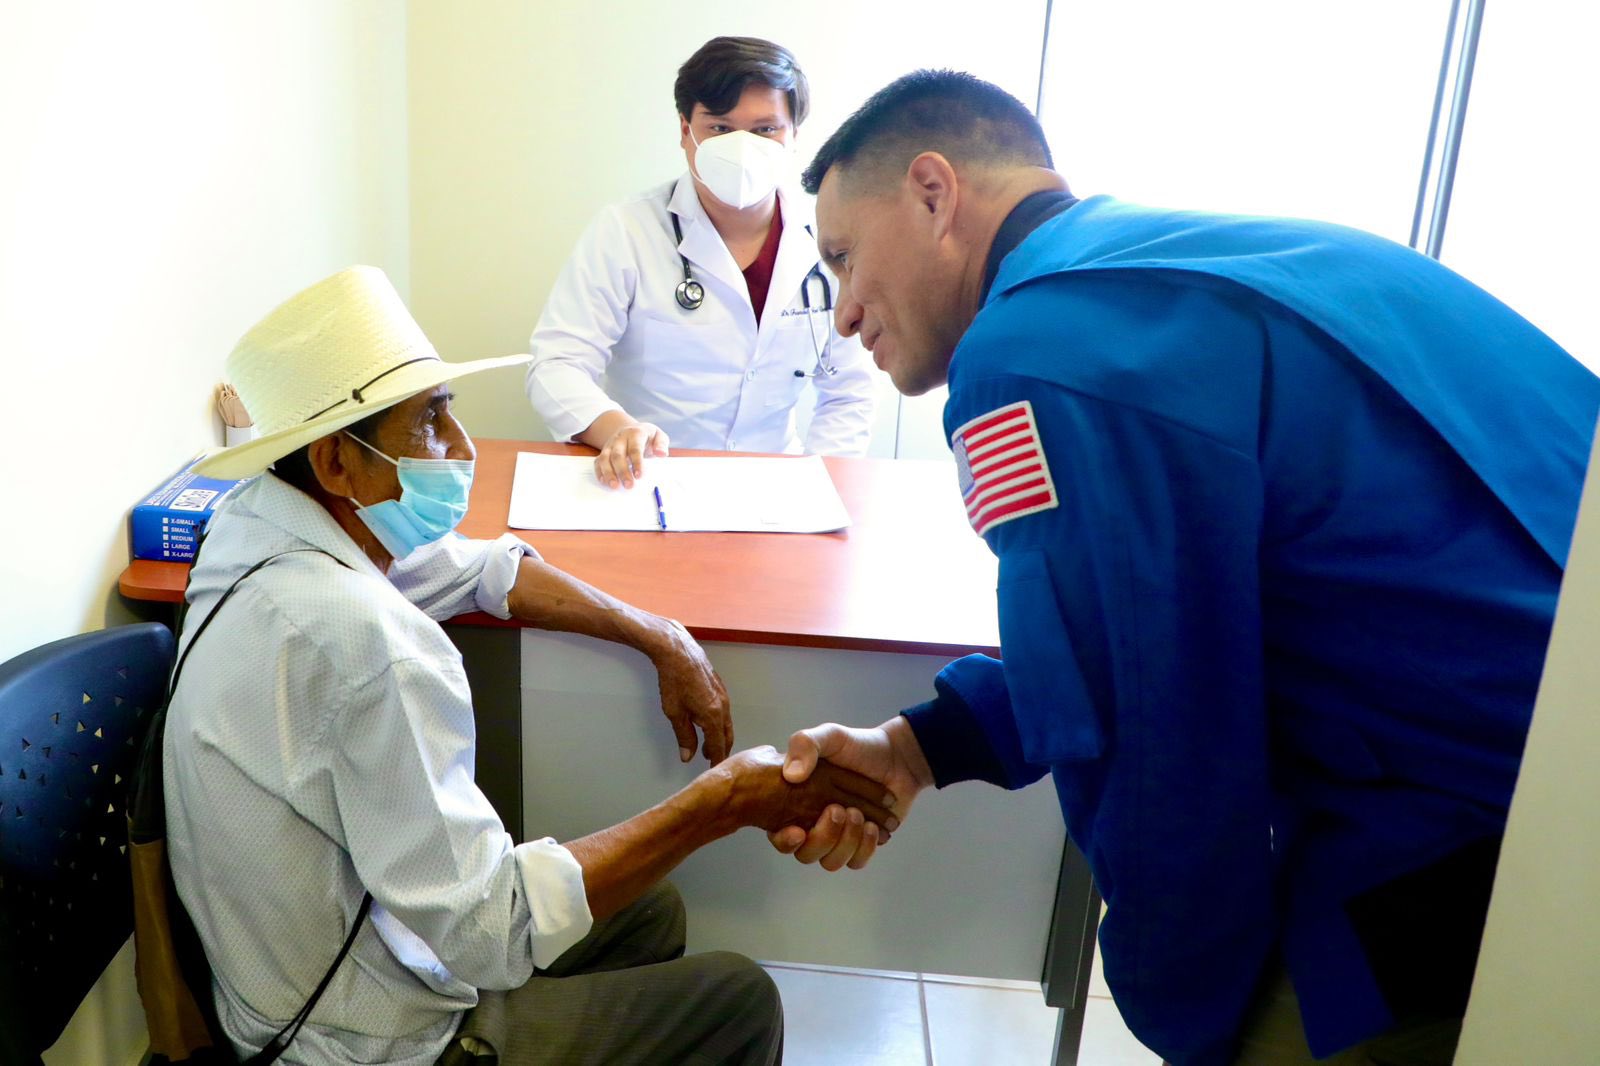 Frank Rubio Impulsa la Ciencia y Ayuda Humanitaria en El Salvador